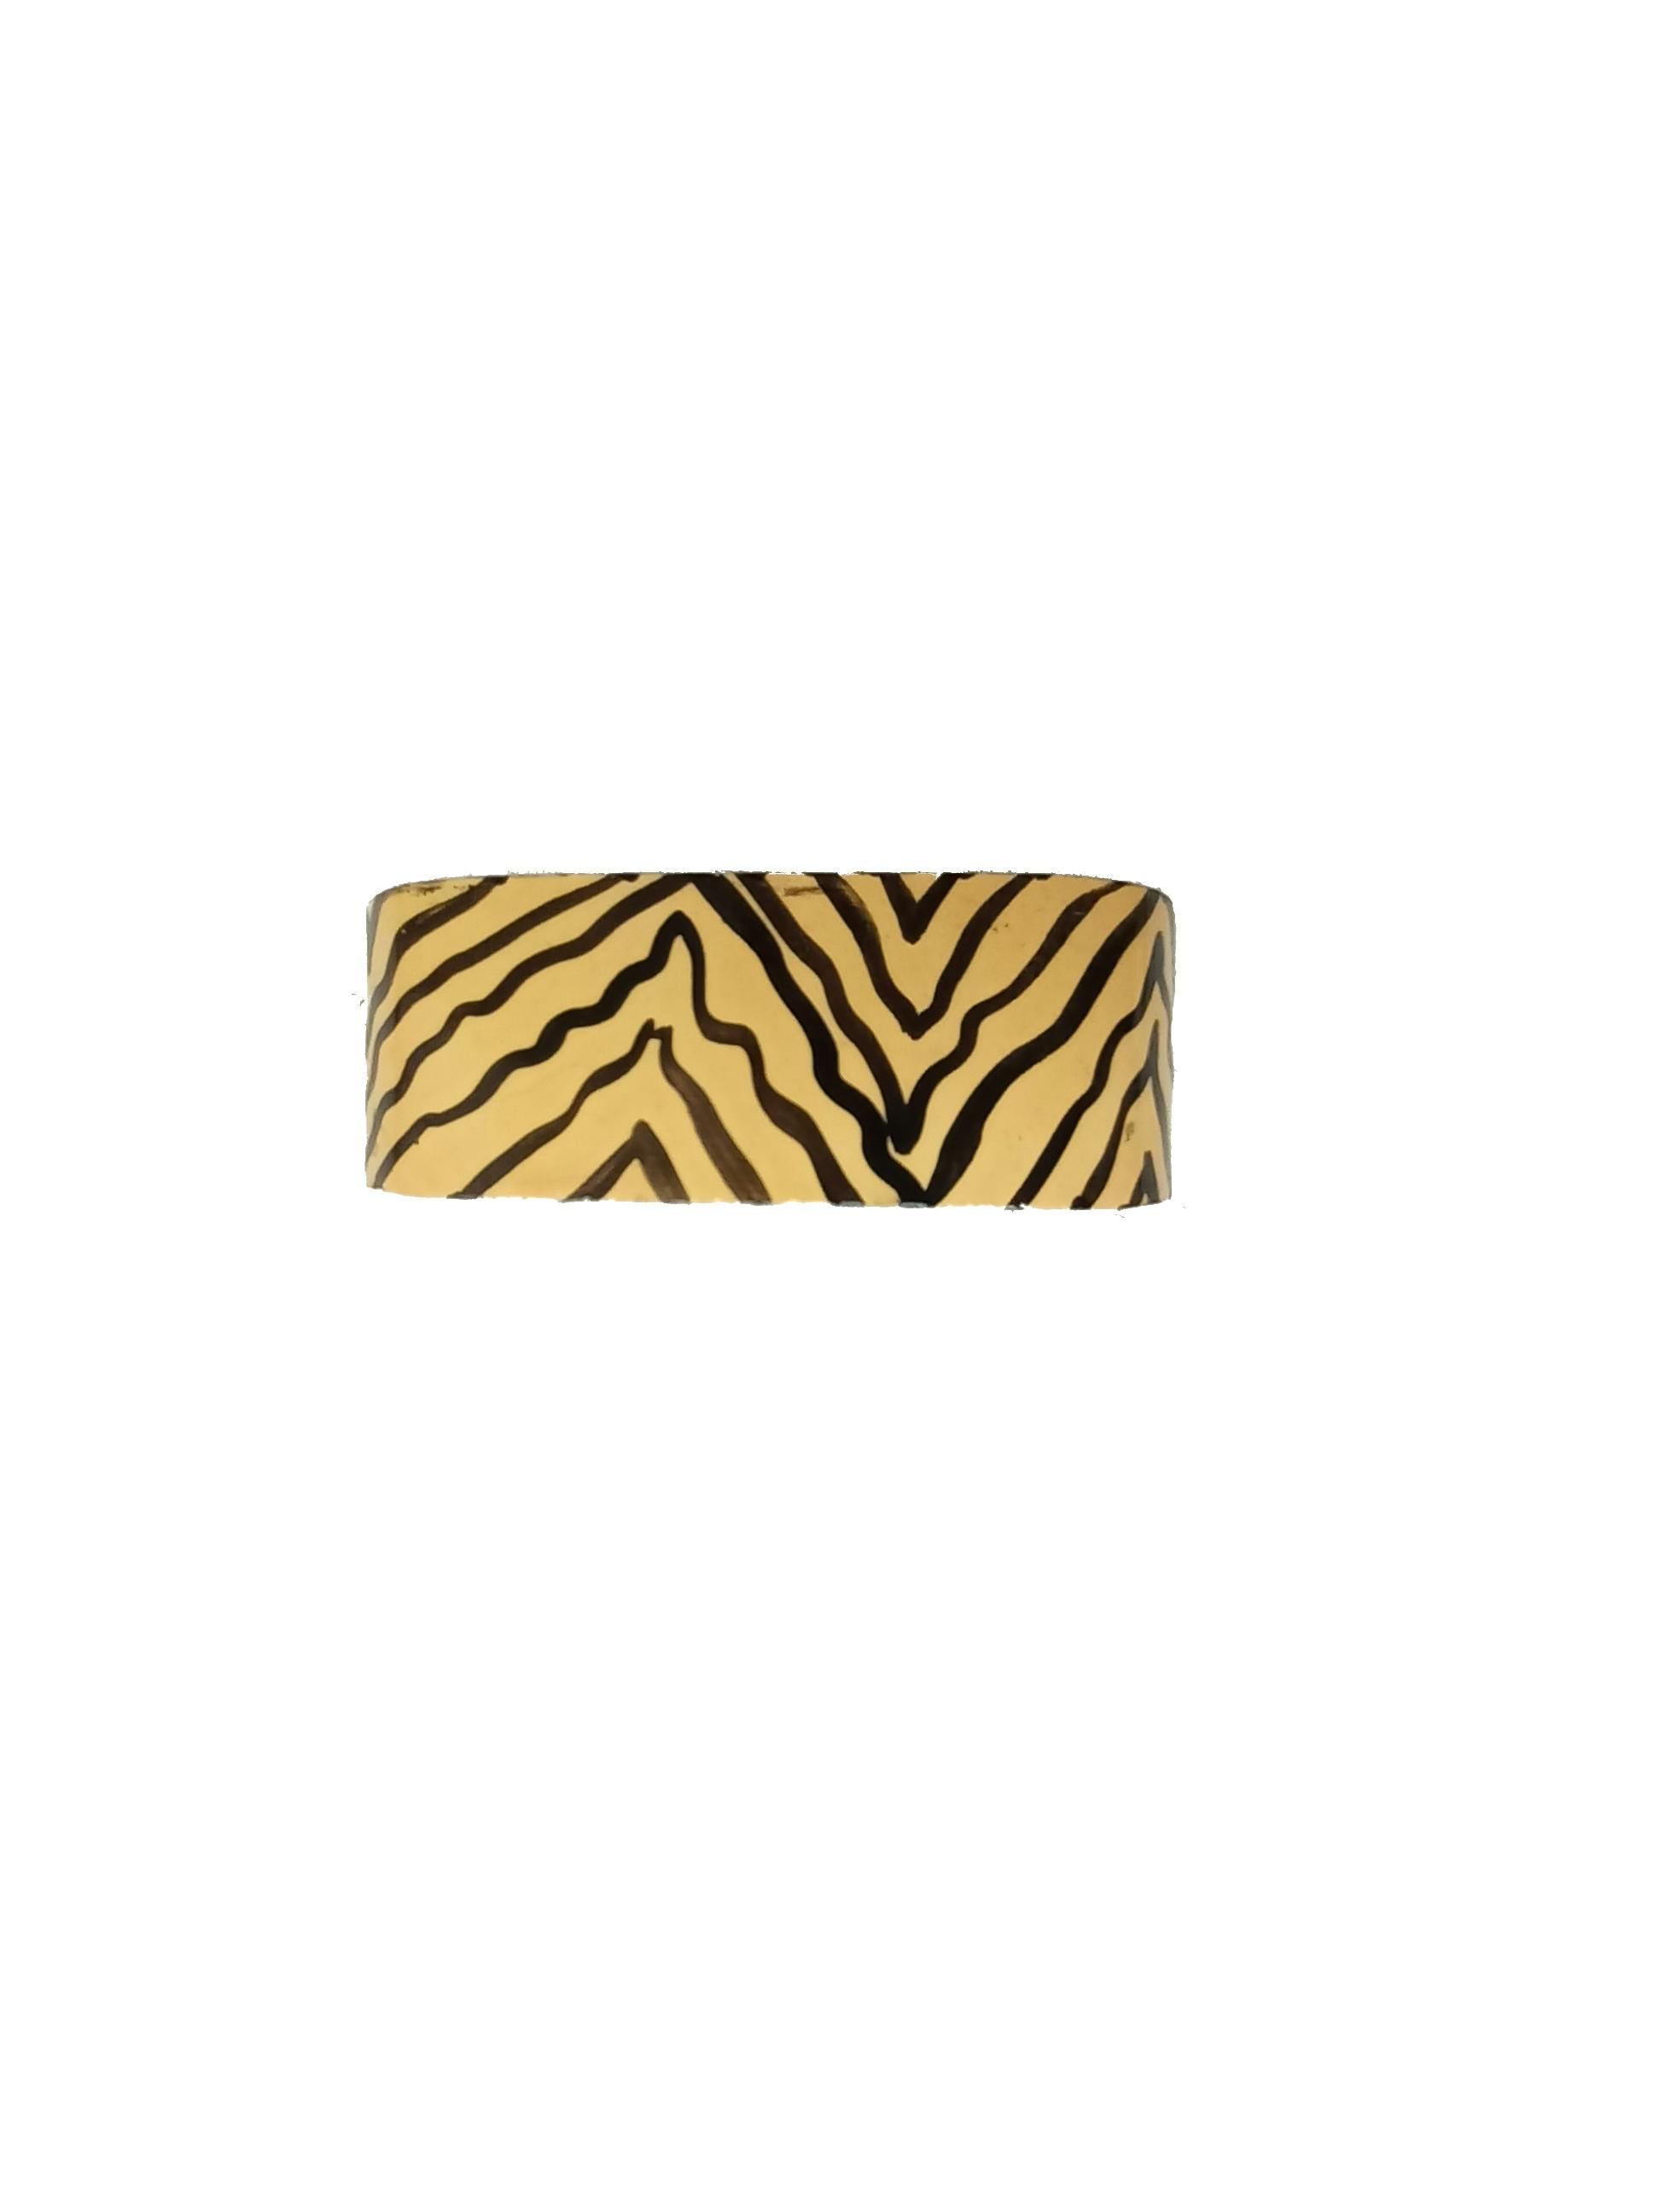 Pulsera de madera cuadrada pintada en animal print amarillo y negro. Detalle: pequeñas manchitas